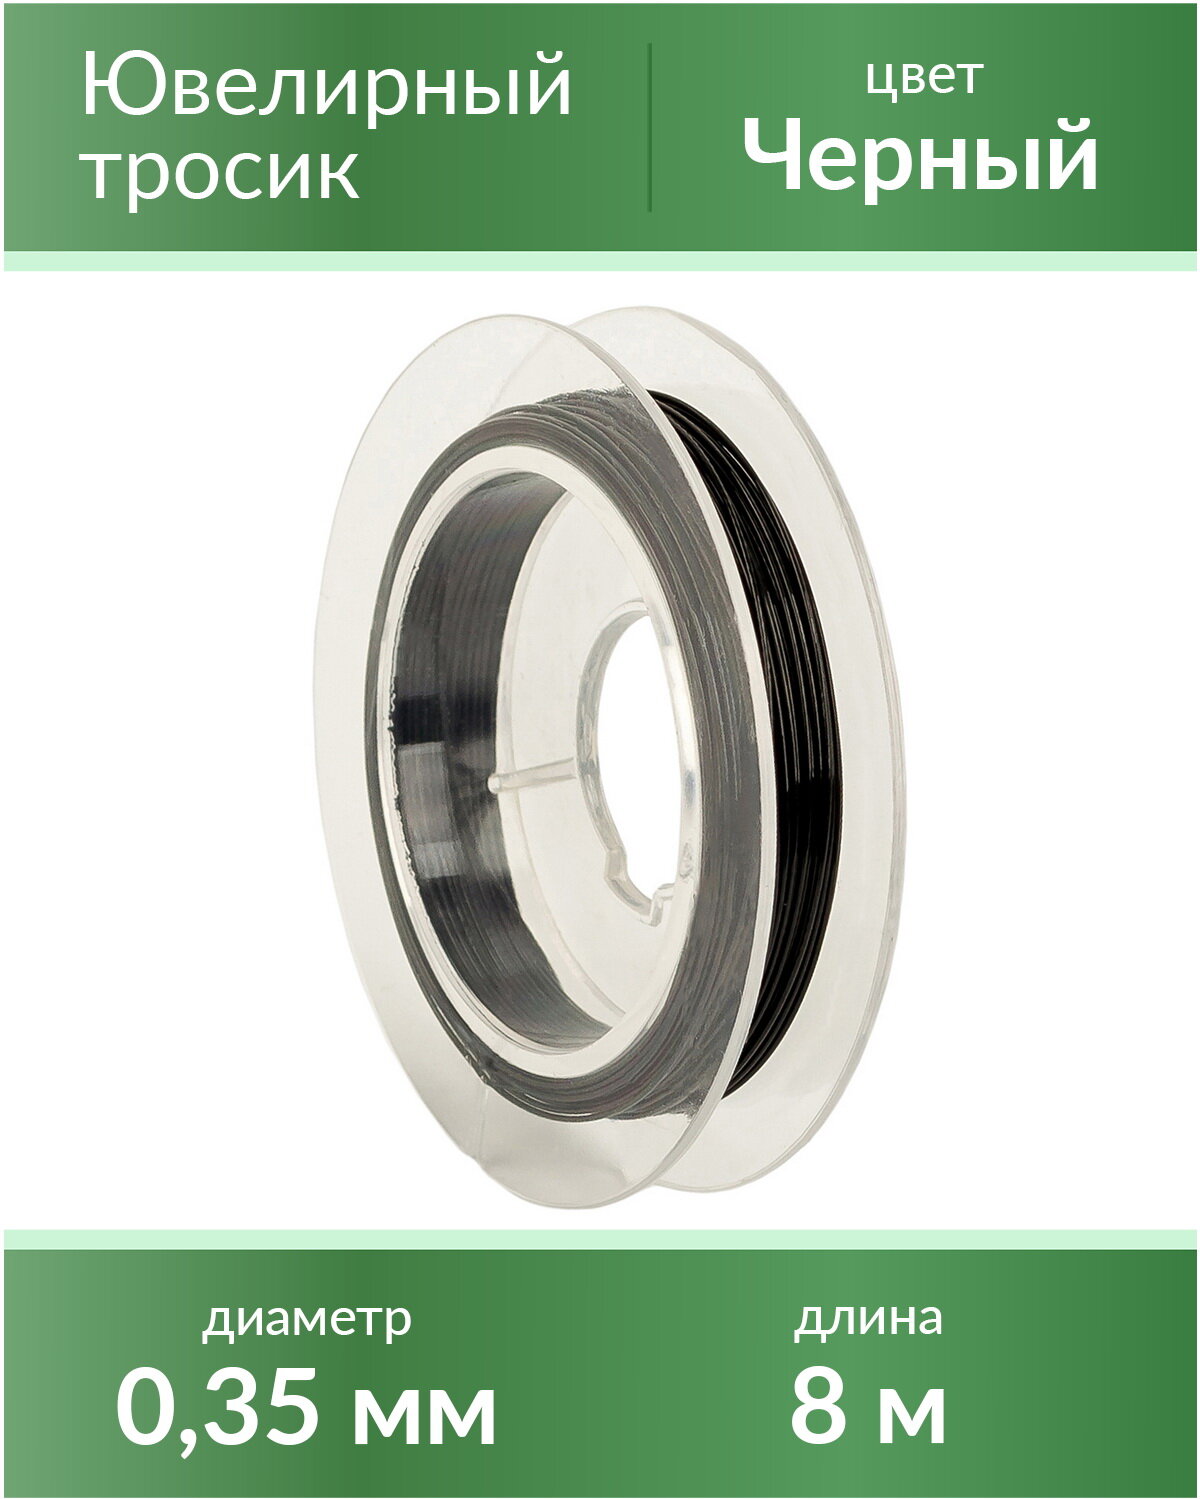 Тросик ювелирный (ланка), диаметр 0,35 мм, цвет: черный